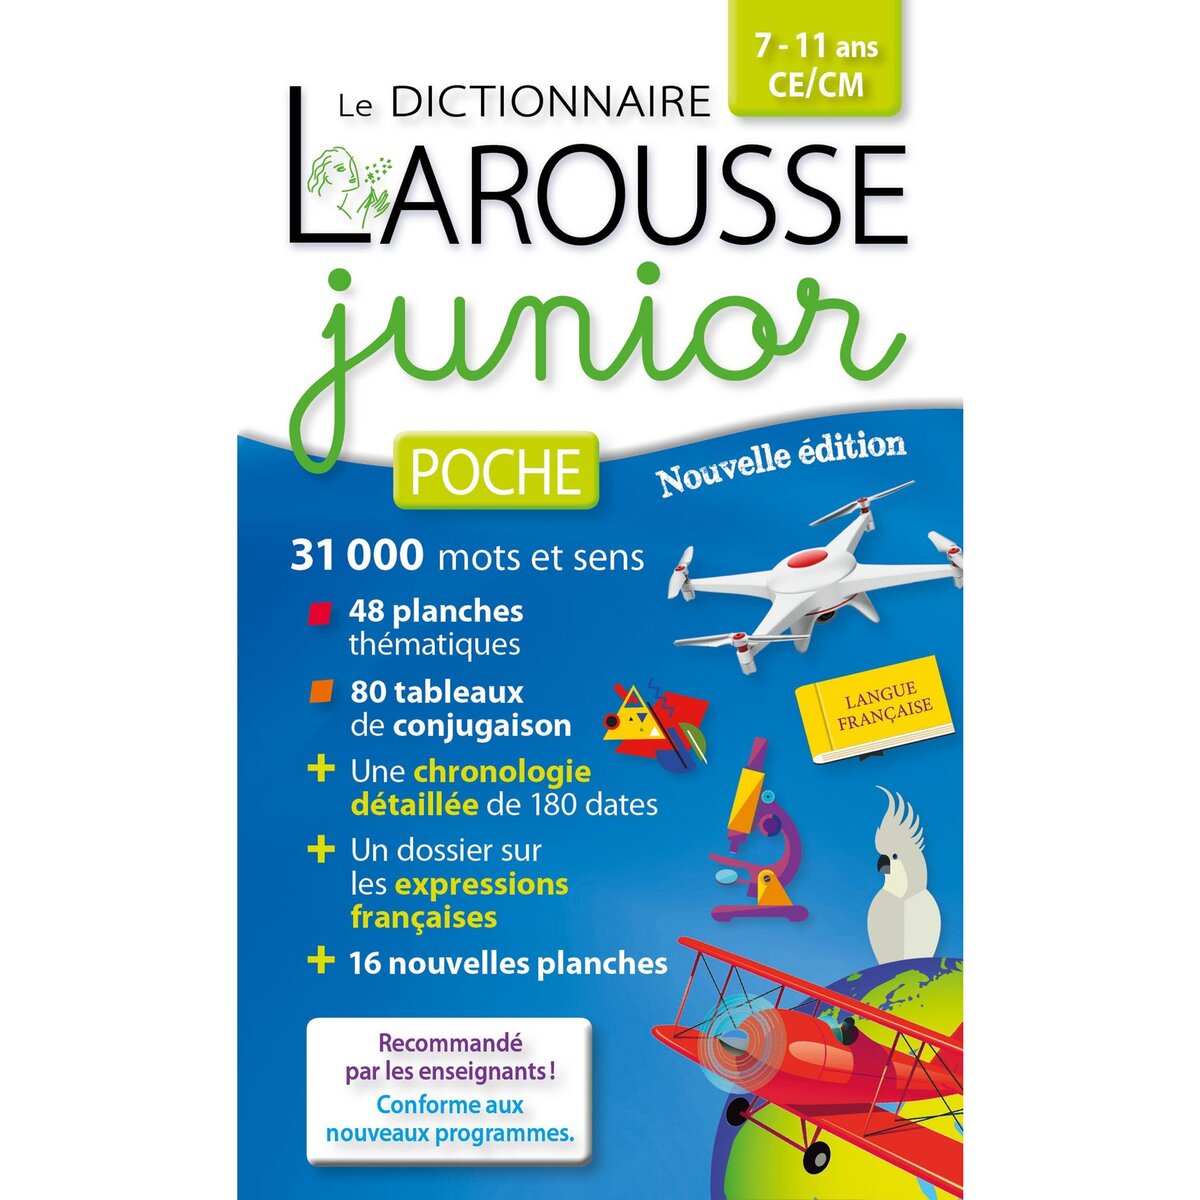 LAROUSSE Dictionnaire juinor de poche Larousse 